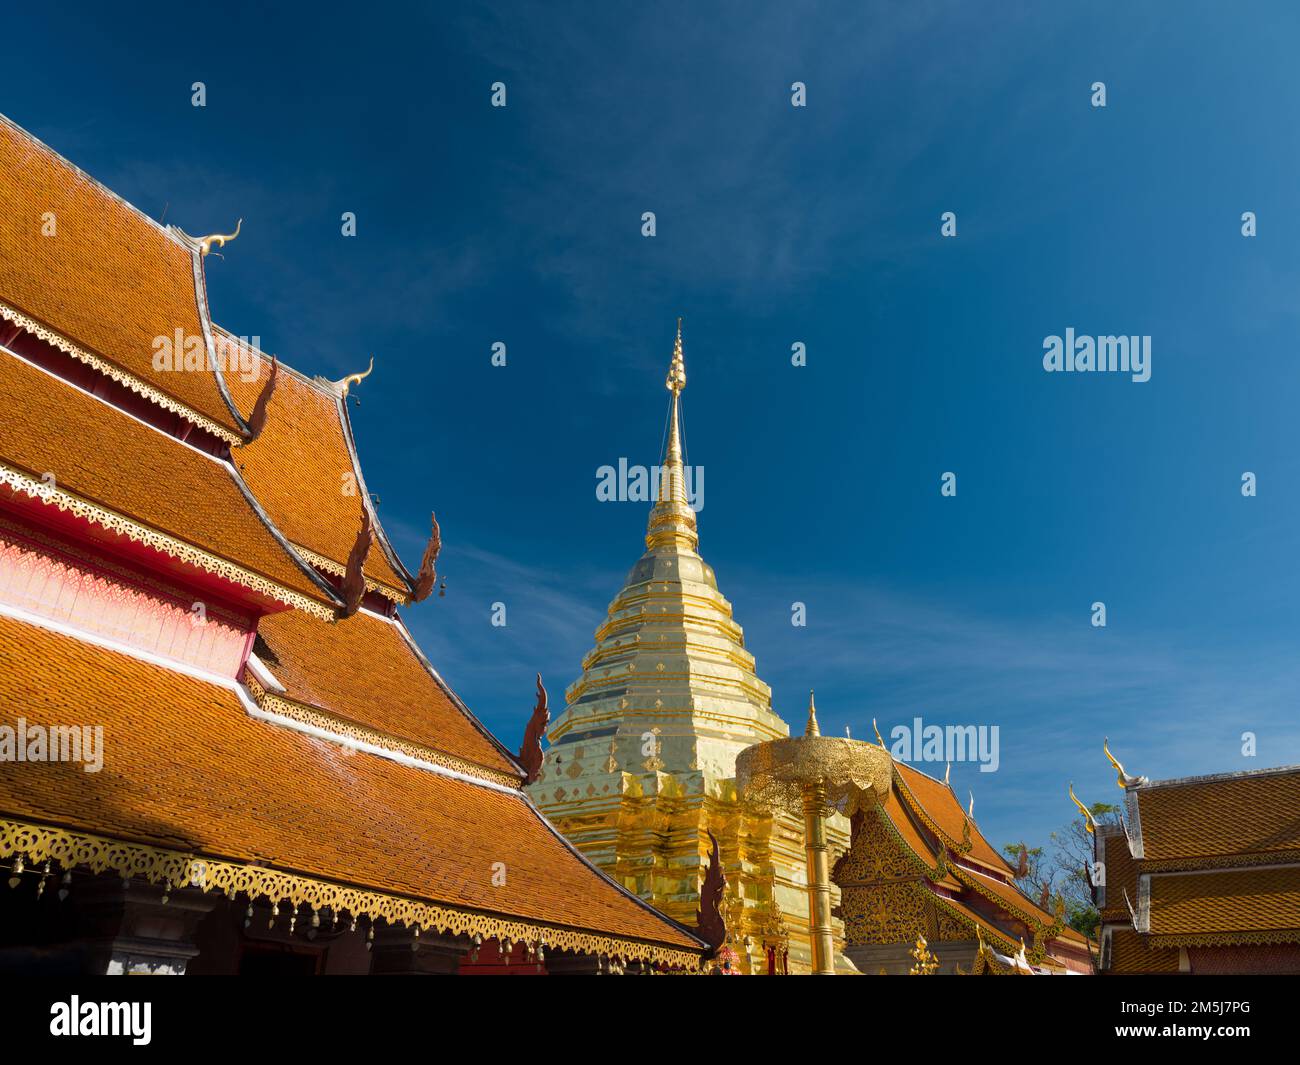 Wat Phra That Doi Suthep Ratchaworawihan temple. Les destinations touristiques les plus populaires de Thaïlande. Chiang Mai, Thaïlande Banque D'Images